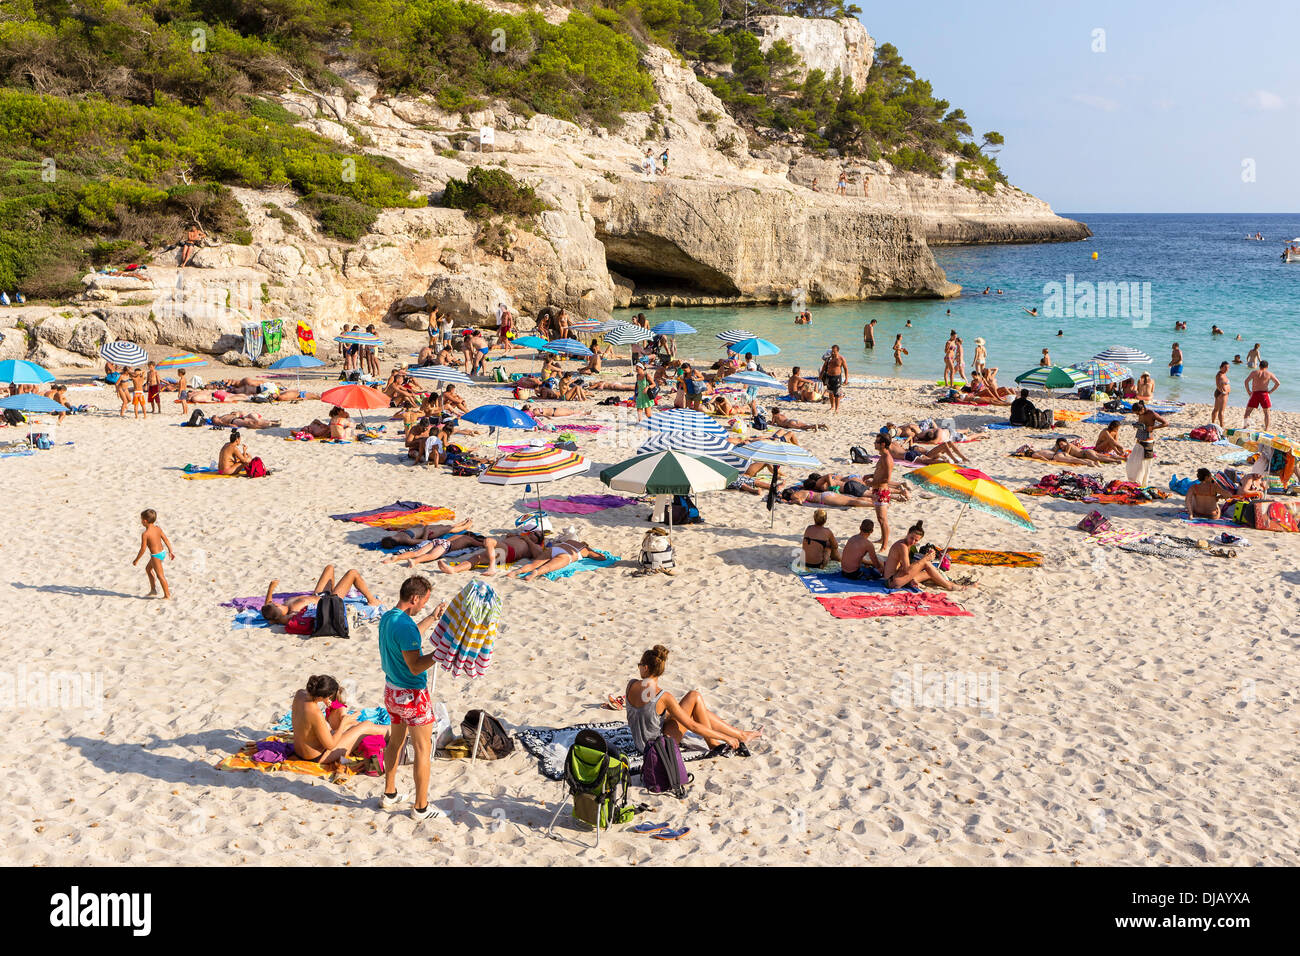 Les touristes sur la plage de sable de plage de Cala Mitjana, Minorque, Iles Baléares, Espagne Banque D'Images